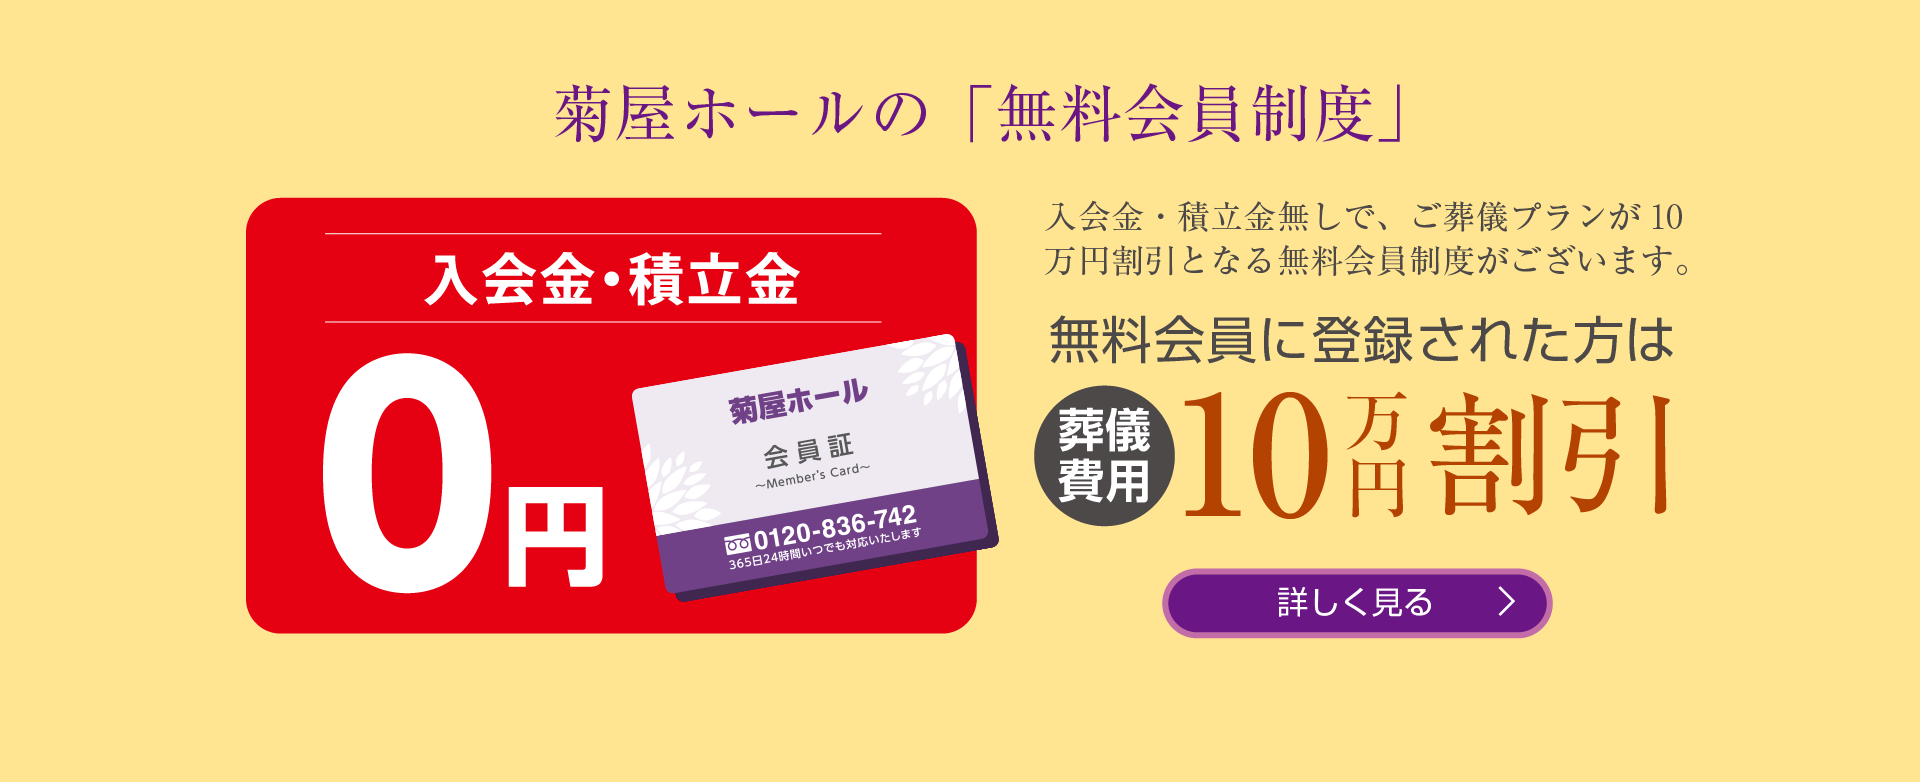 菊屋ホールの「無料会員制度」無料会員に登録された方は葬儀費用10万円割引